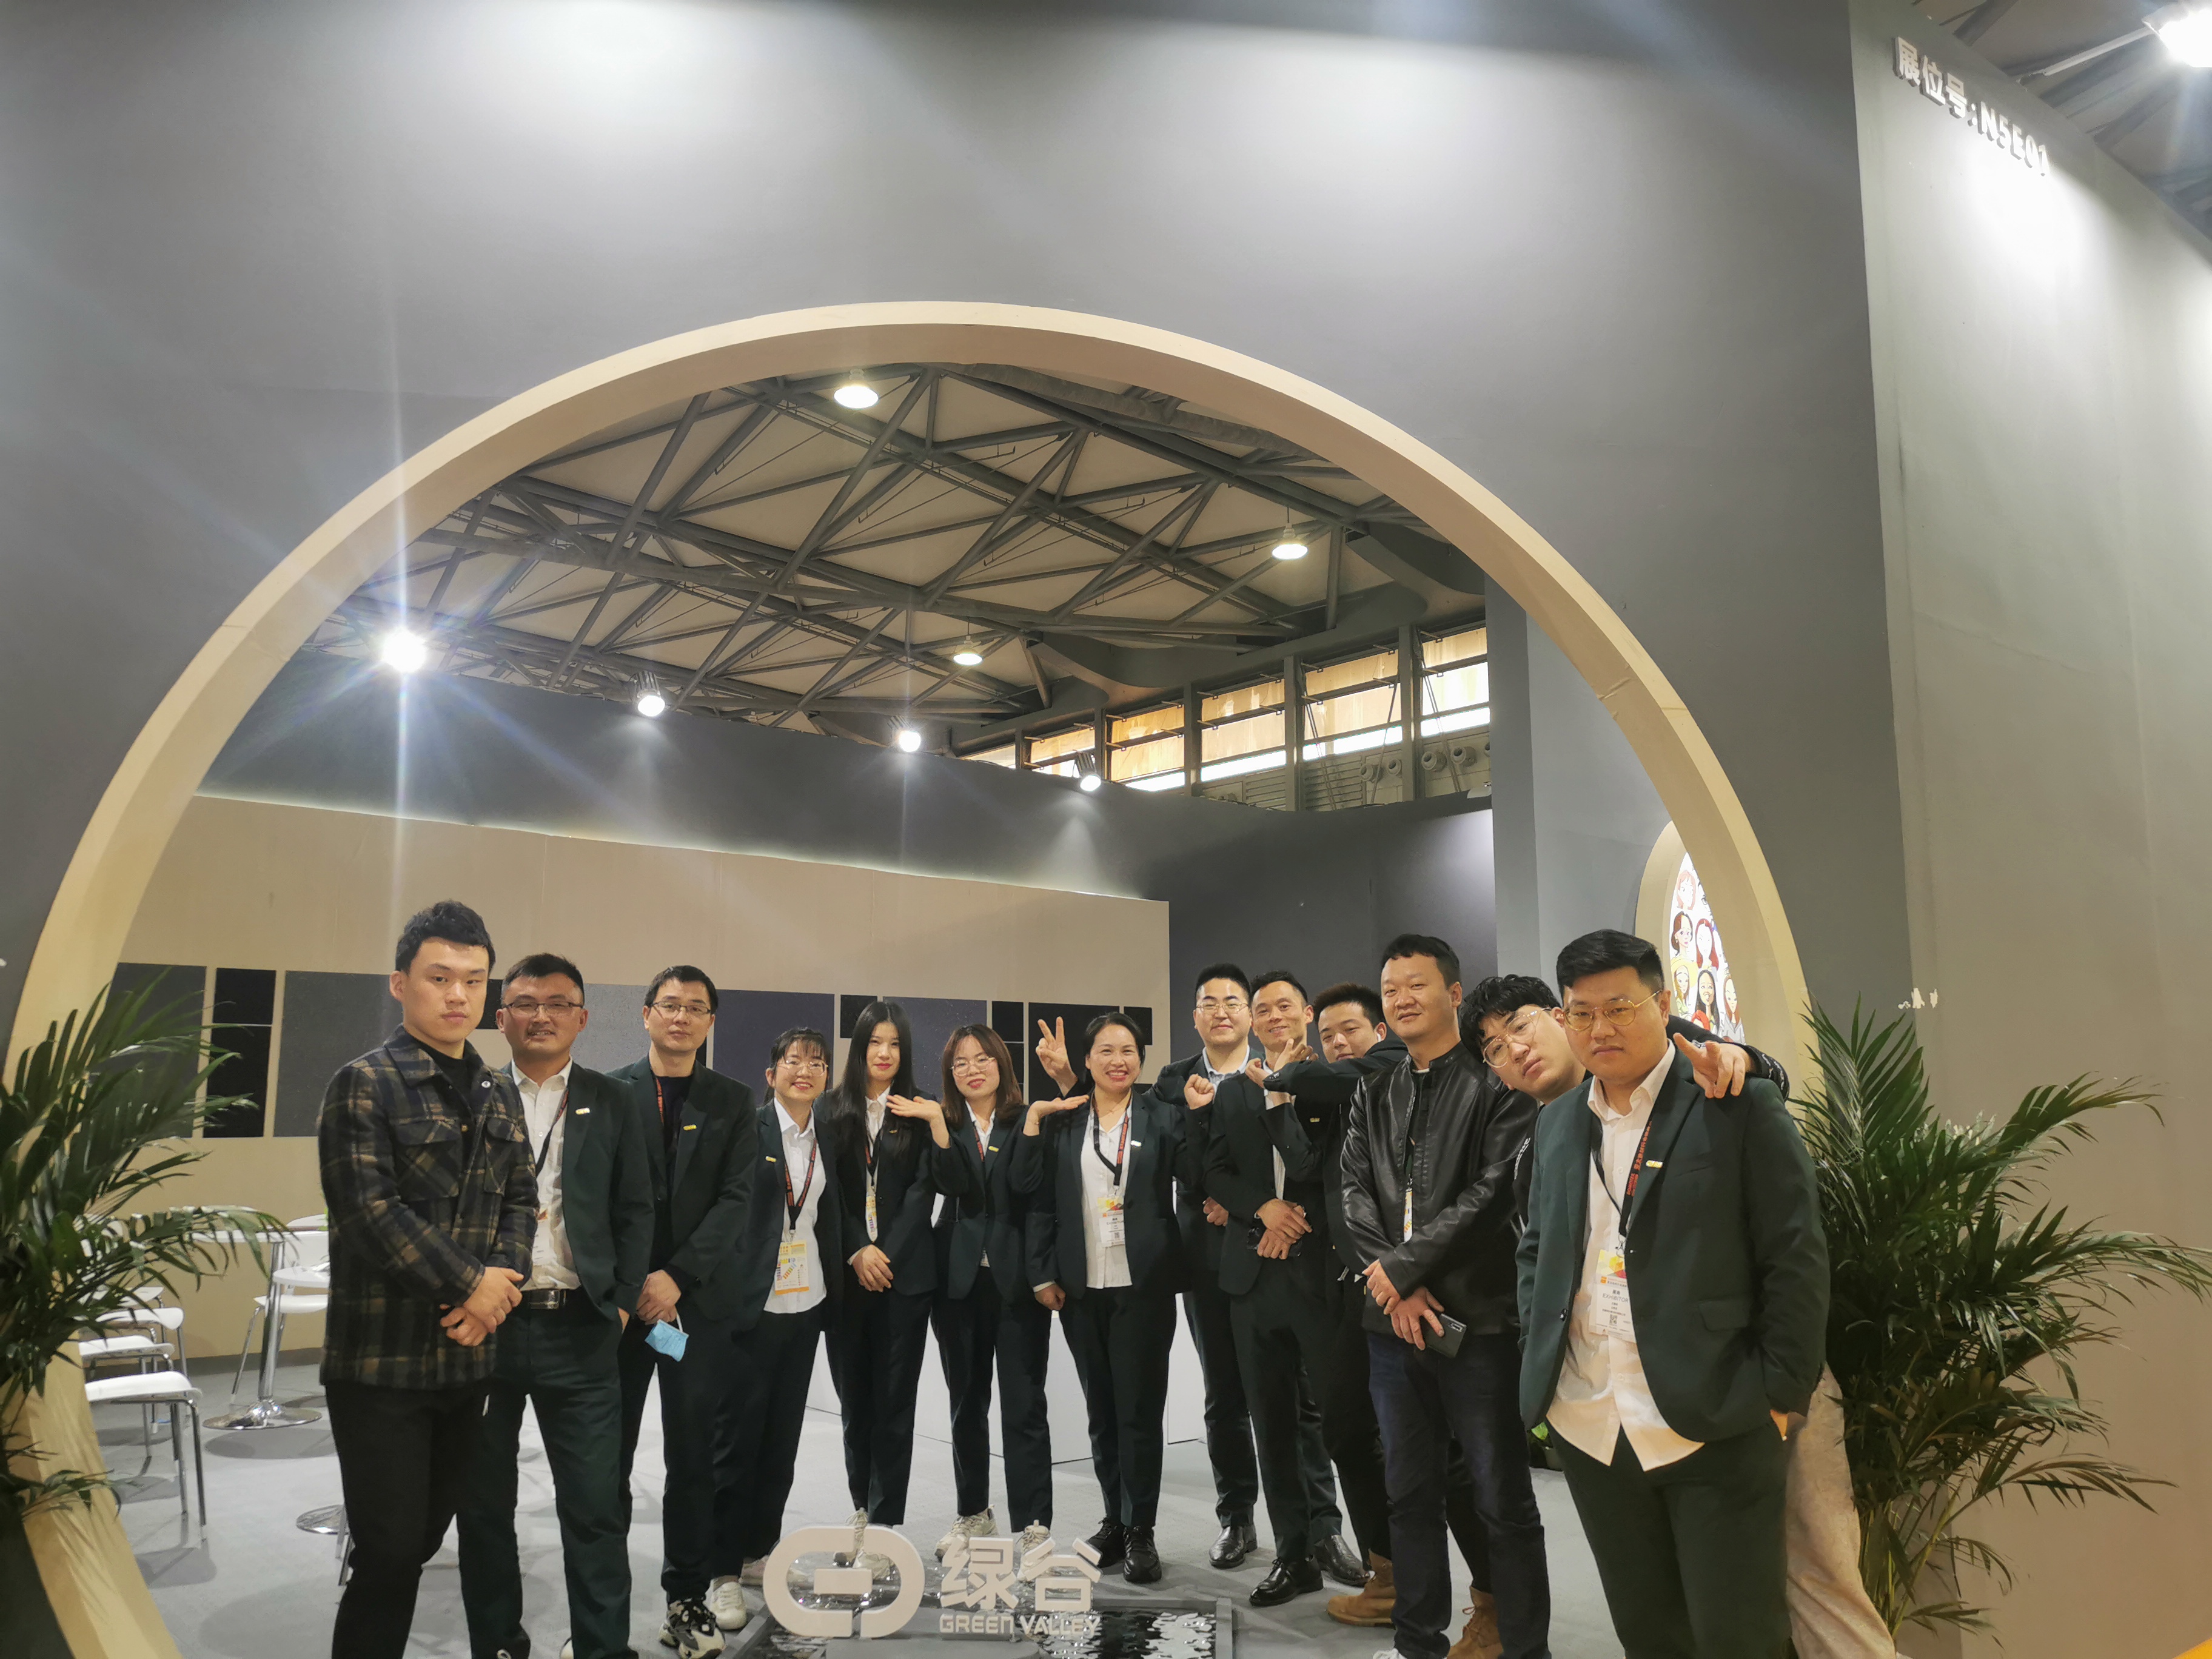 ВЫСТАВКА | Шанхайская выставка напольных покрытий DOMOTEX, Green Valley сделала потрясающий дебют с новейшими продуктами